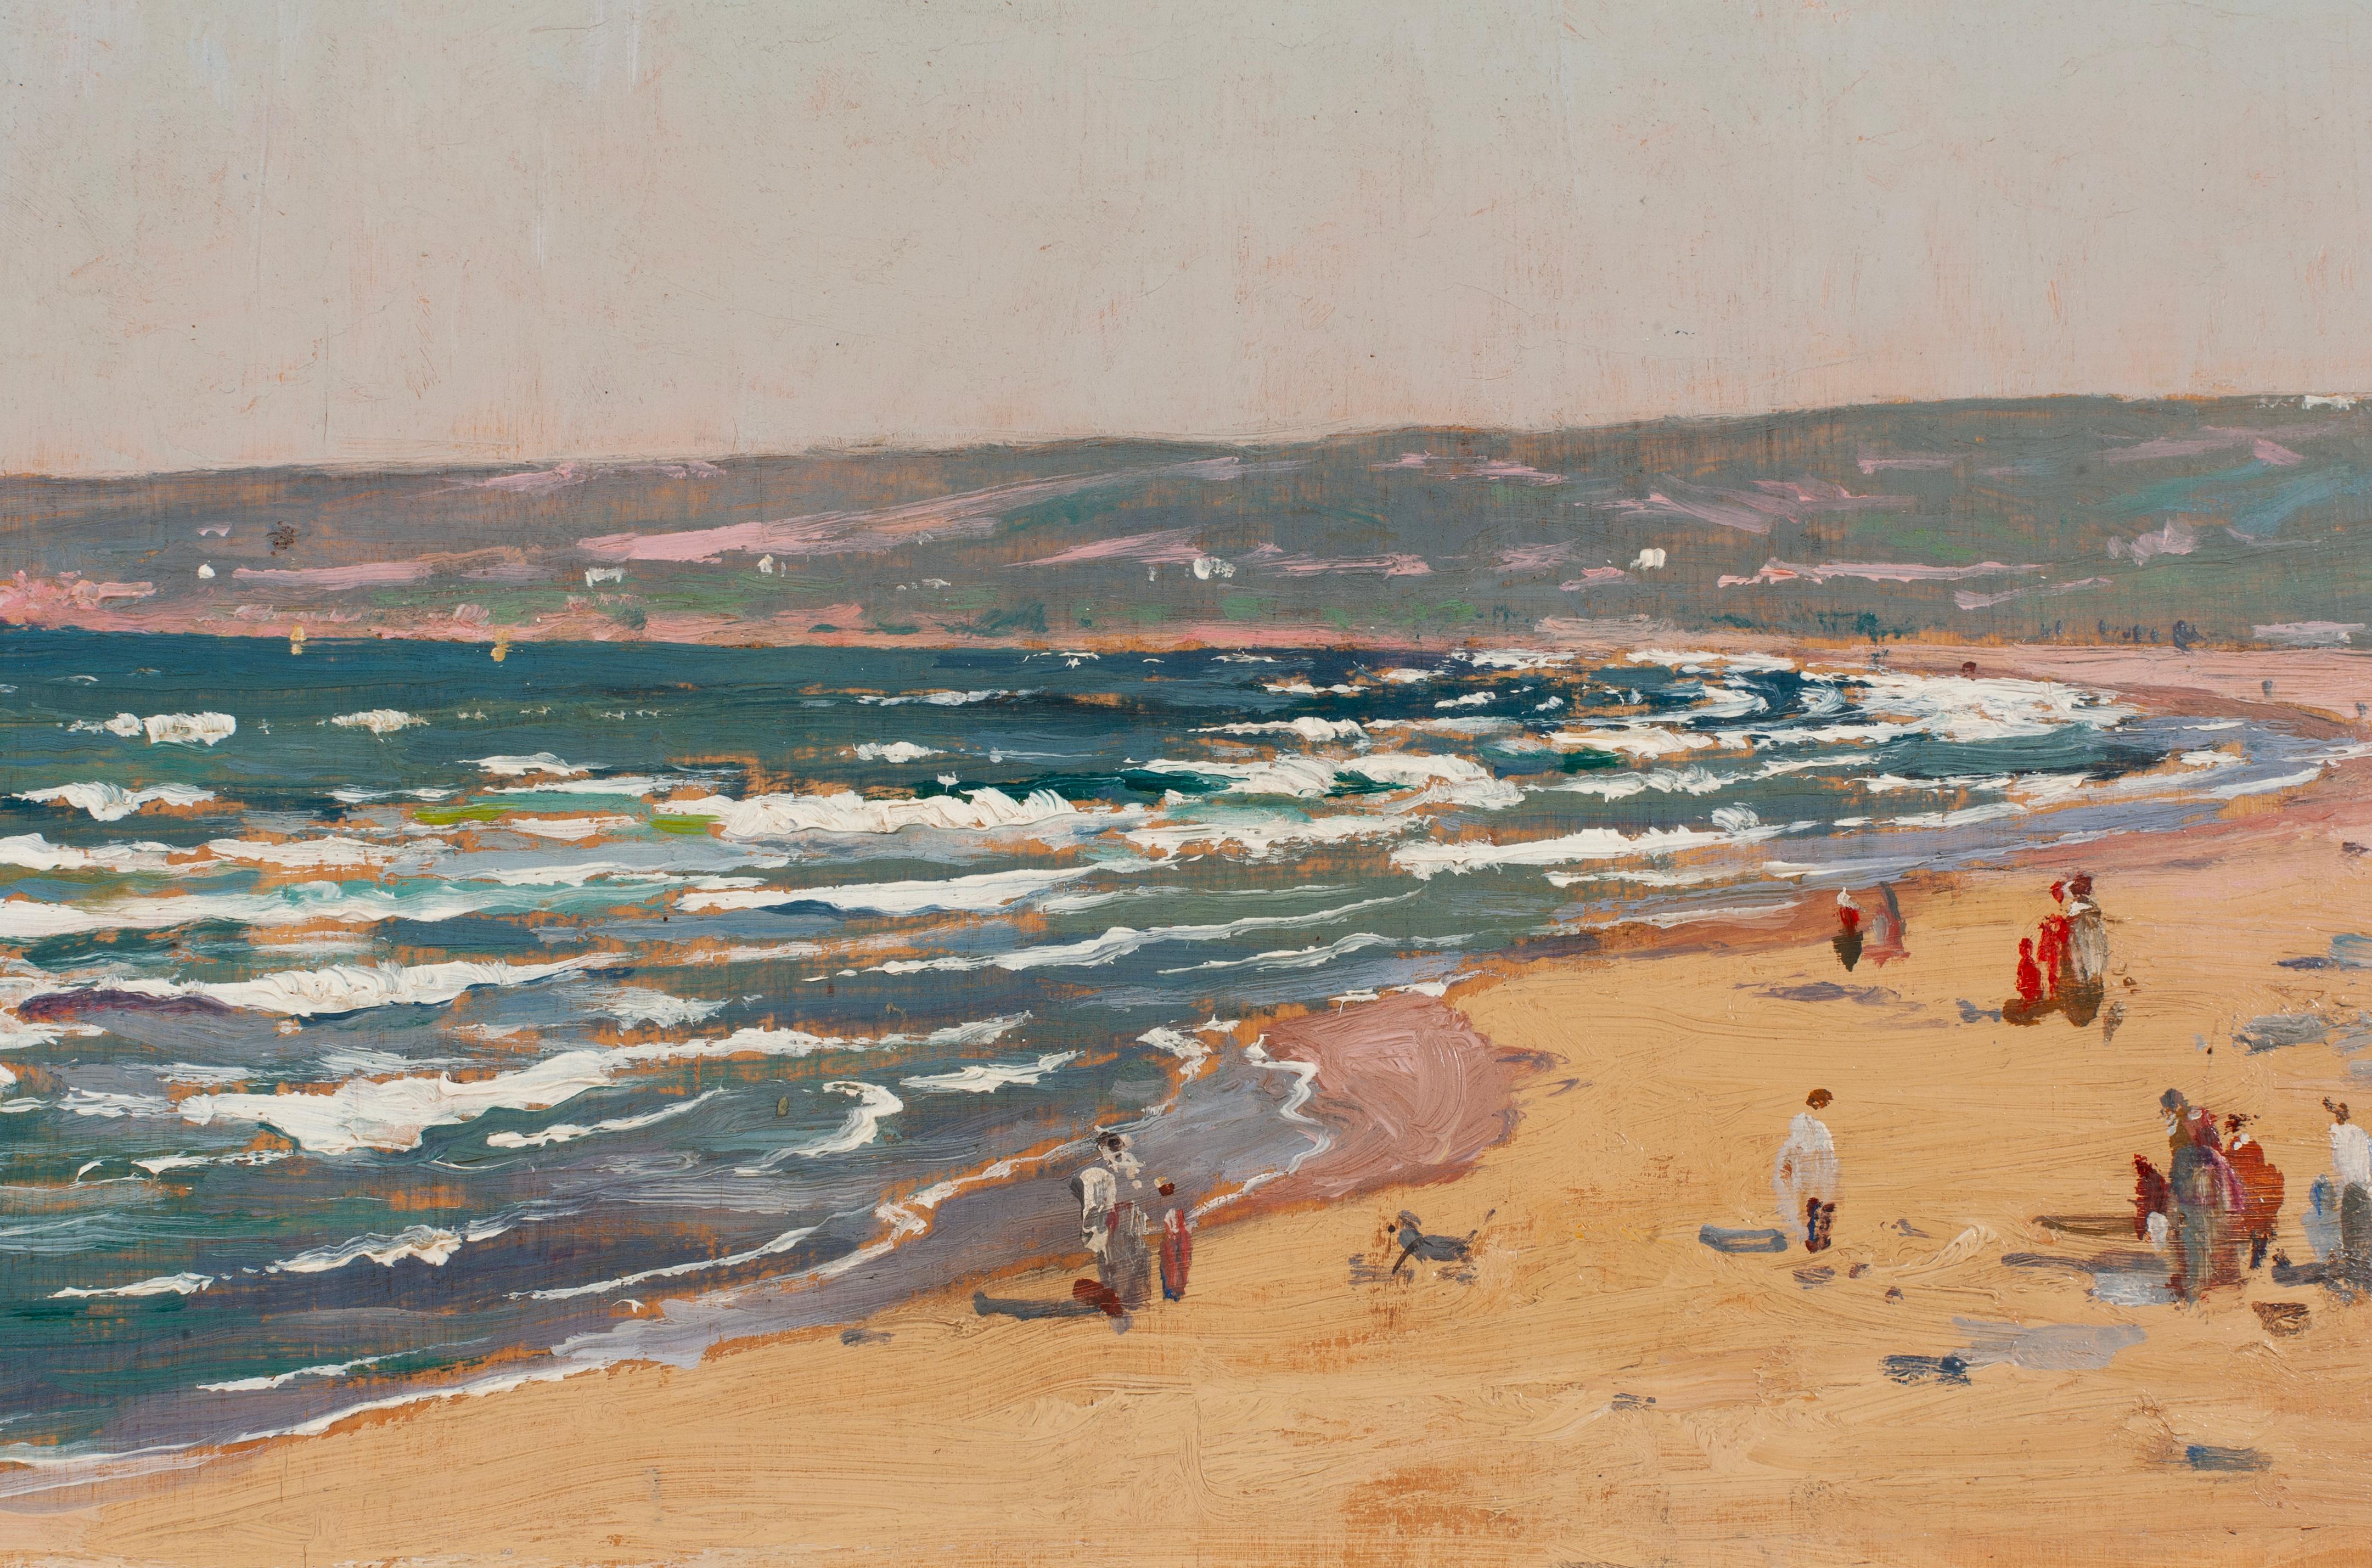 Eugène-François Deshayes (1808-1875) est un artiste français connu pour ses peintures de paysages et de marines. Né à Paris, il a d'abord suivi une formation d'avocat, mais sa passion pour l'art l'a conduit à poursuivre une carrière de peintre.